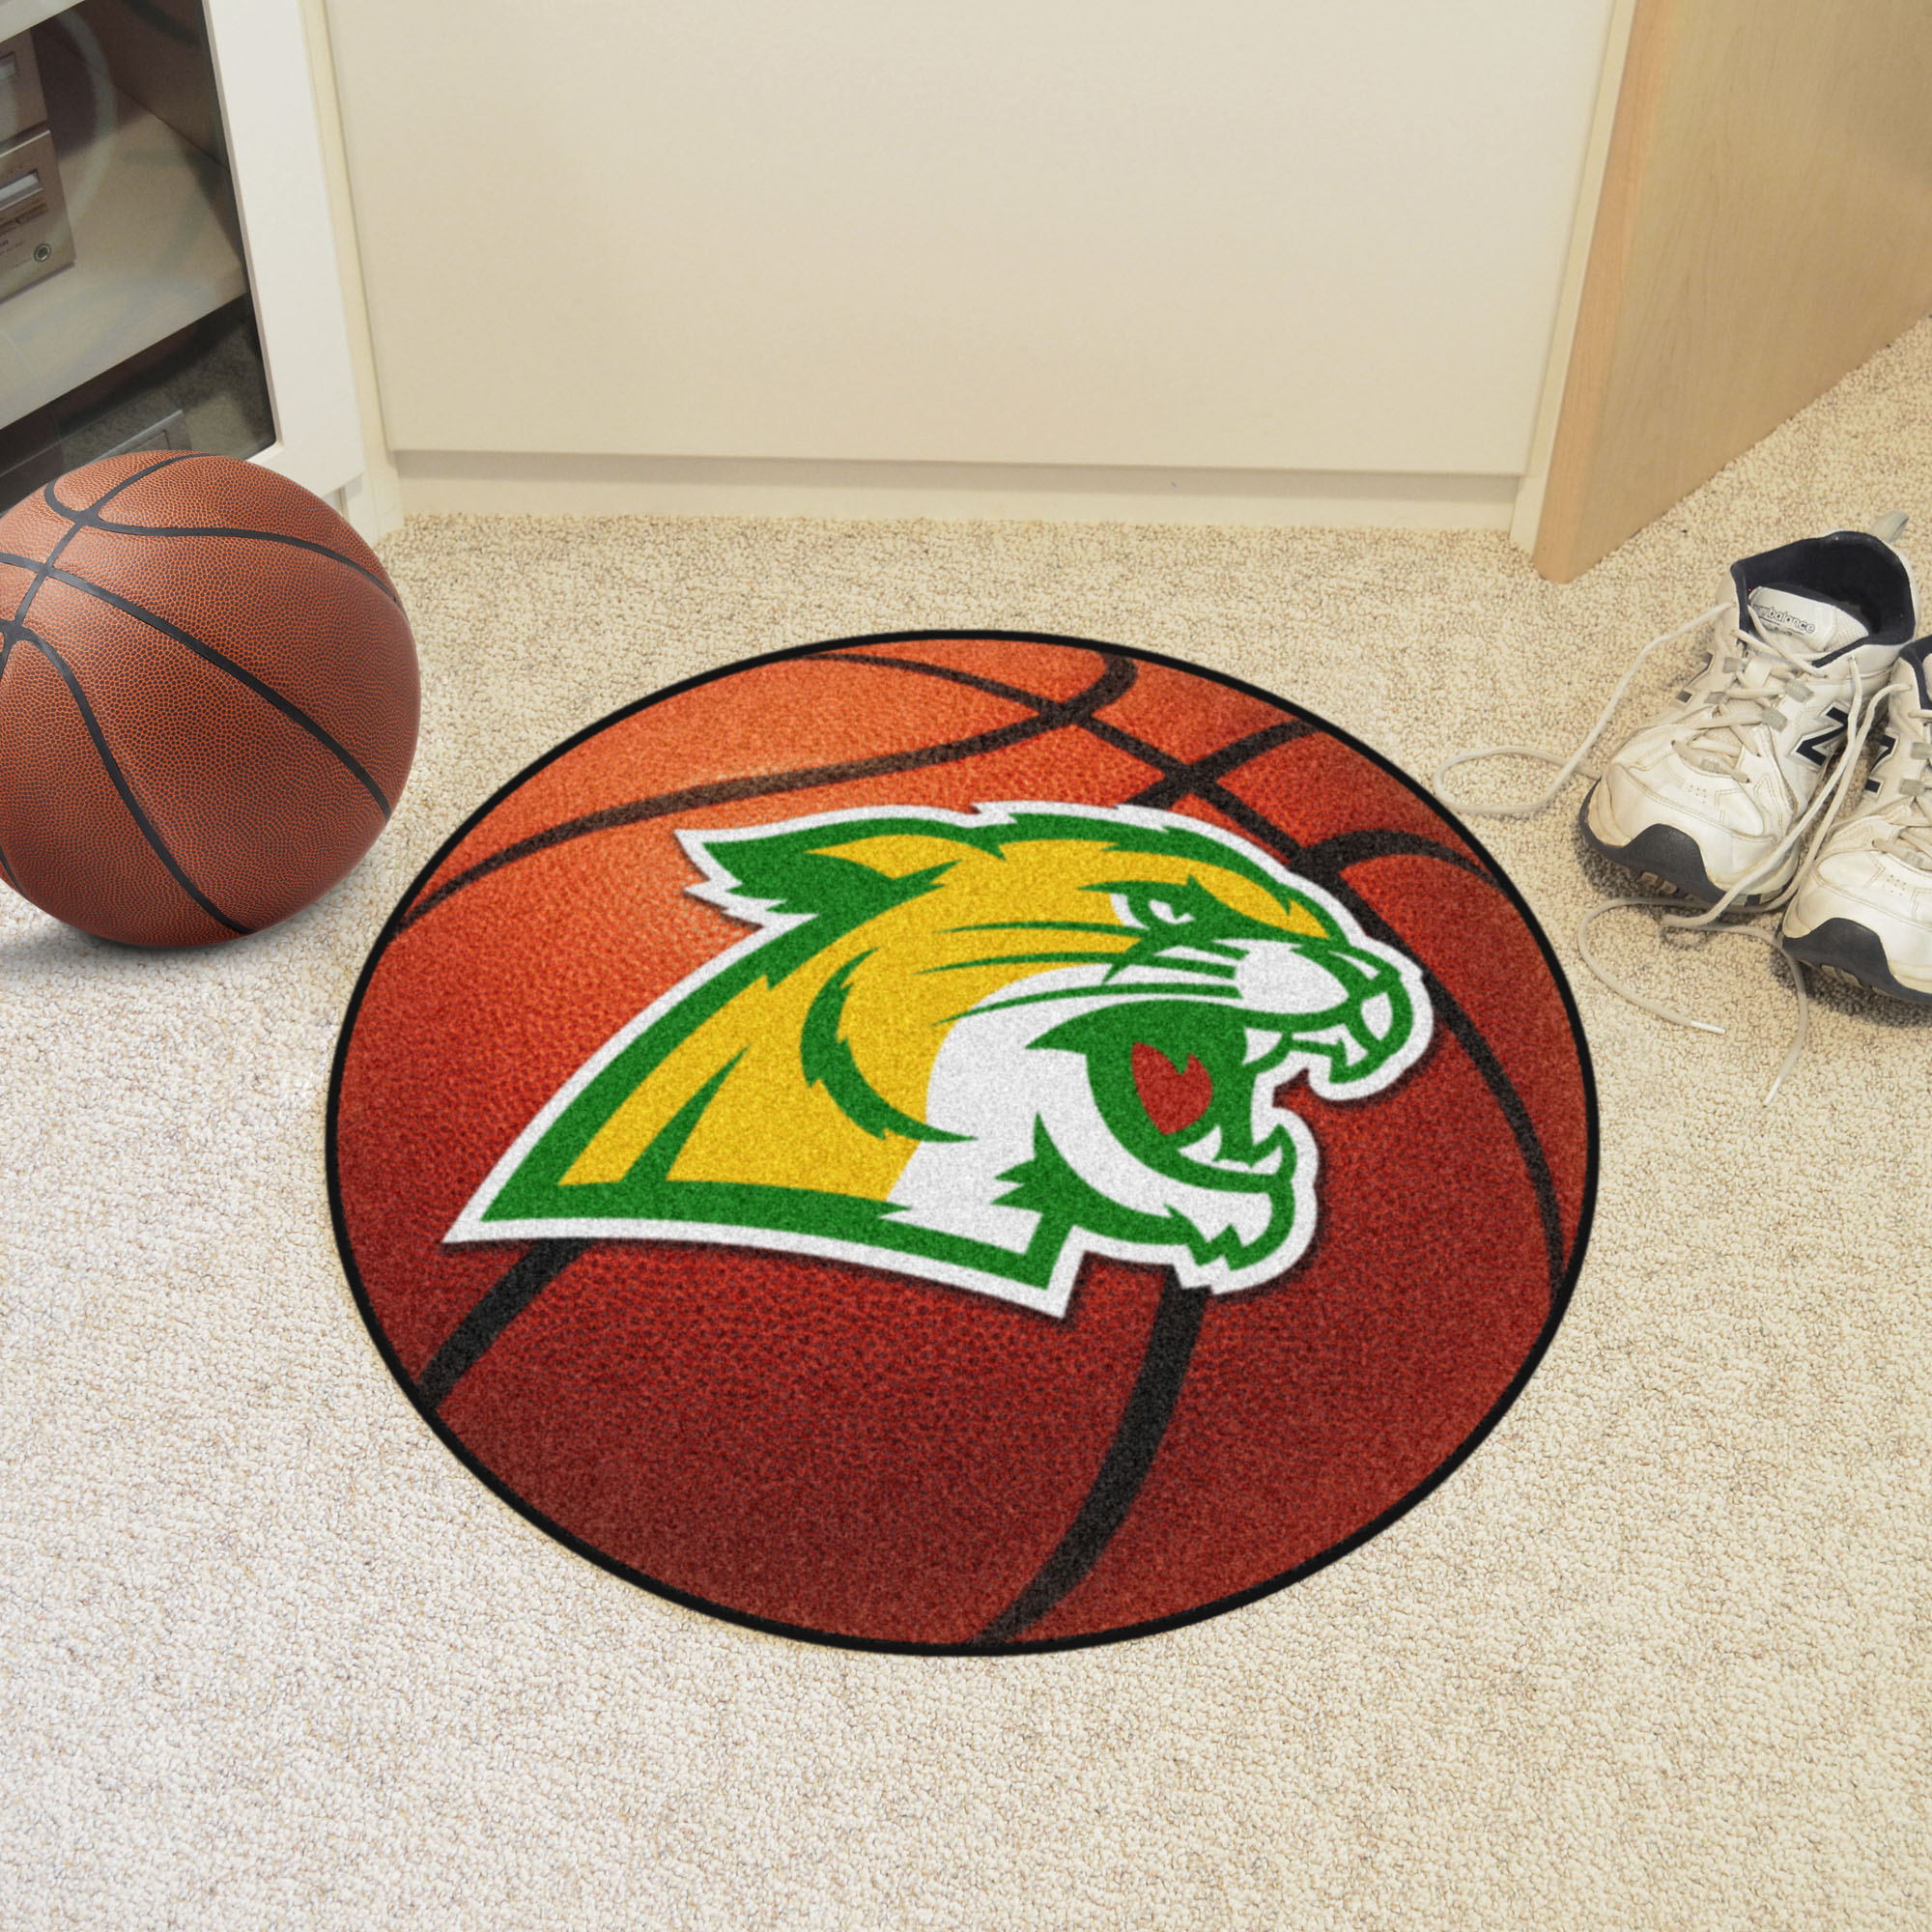 Northern Michigan University Wildcats Ball Shaped Area Rugs (Ball Shaped Area Rugs: Basketball)